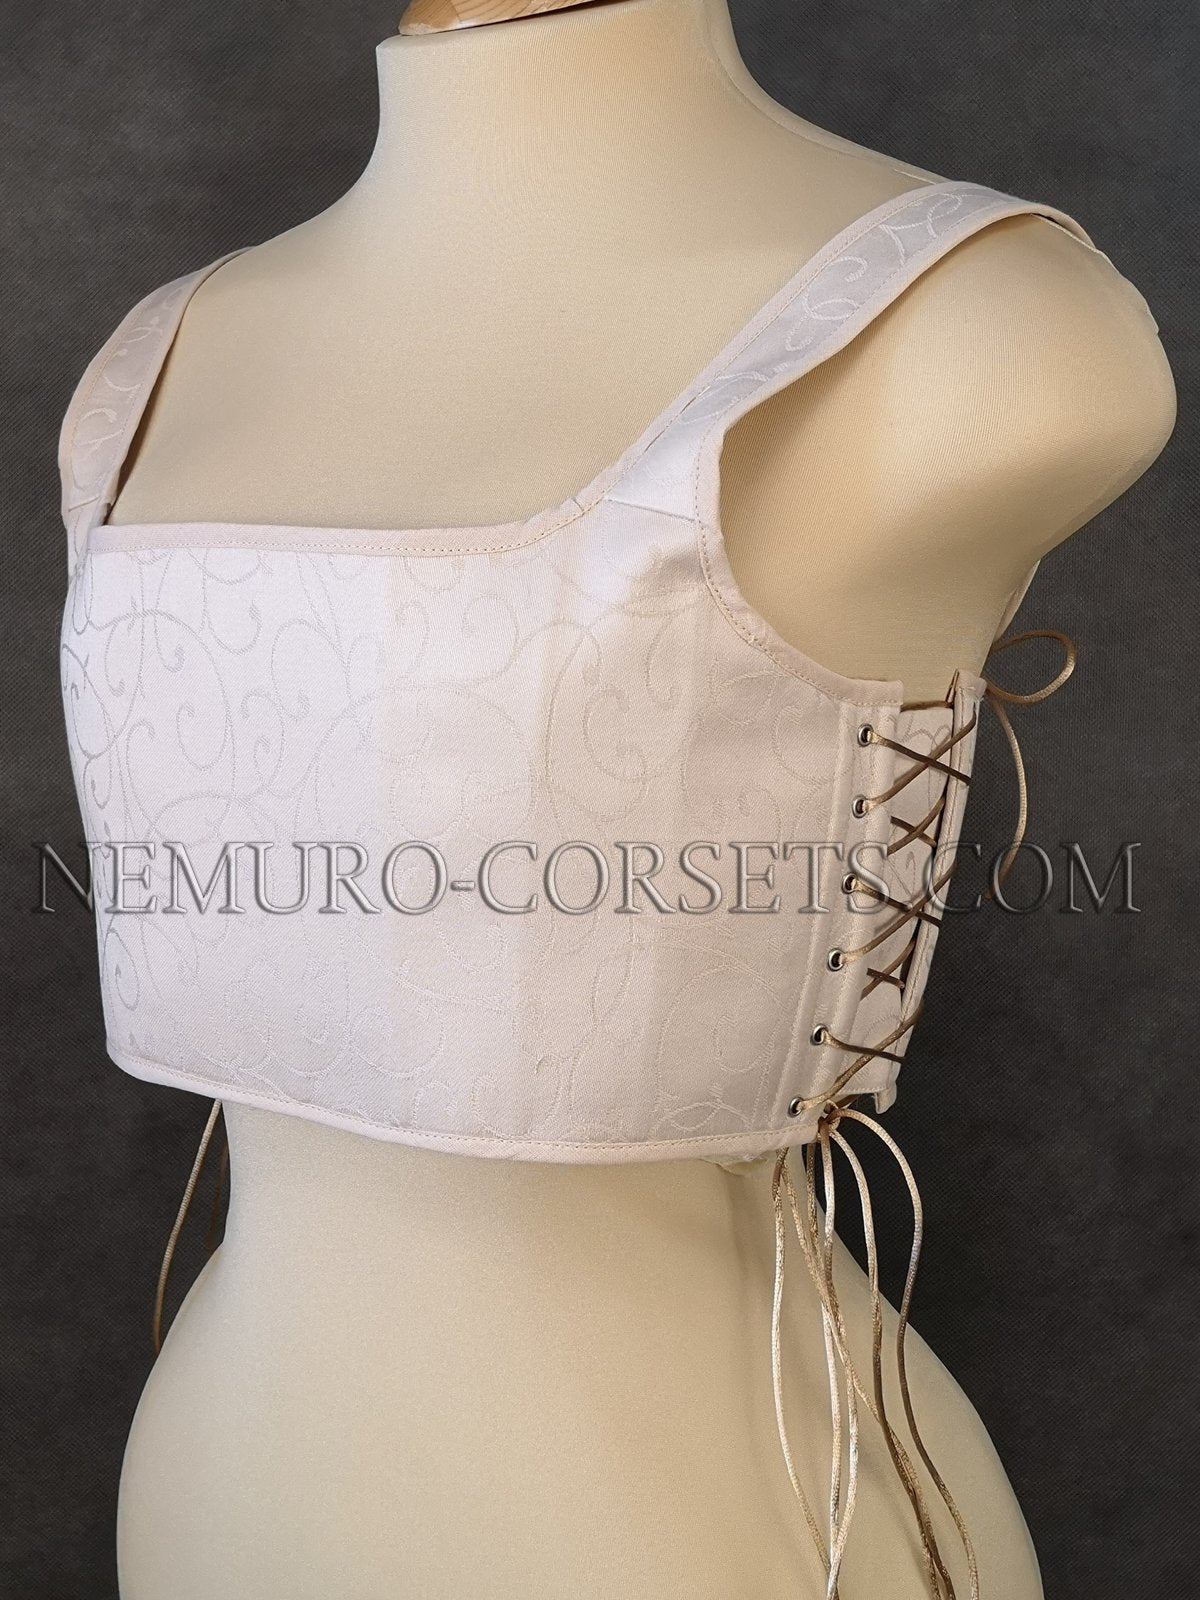 Bust binder - corset breast flattener